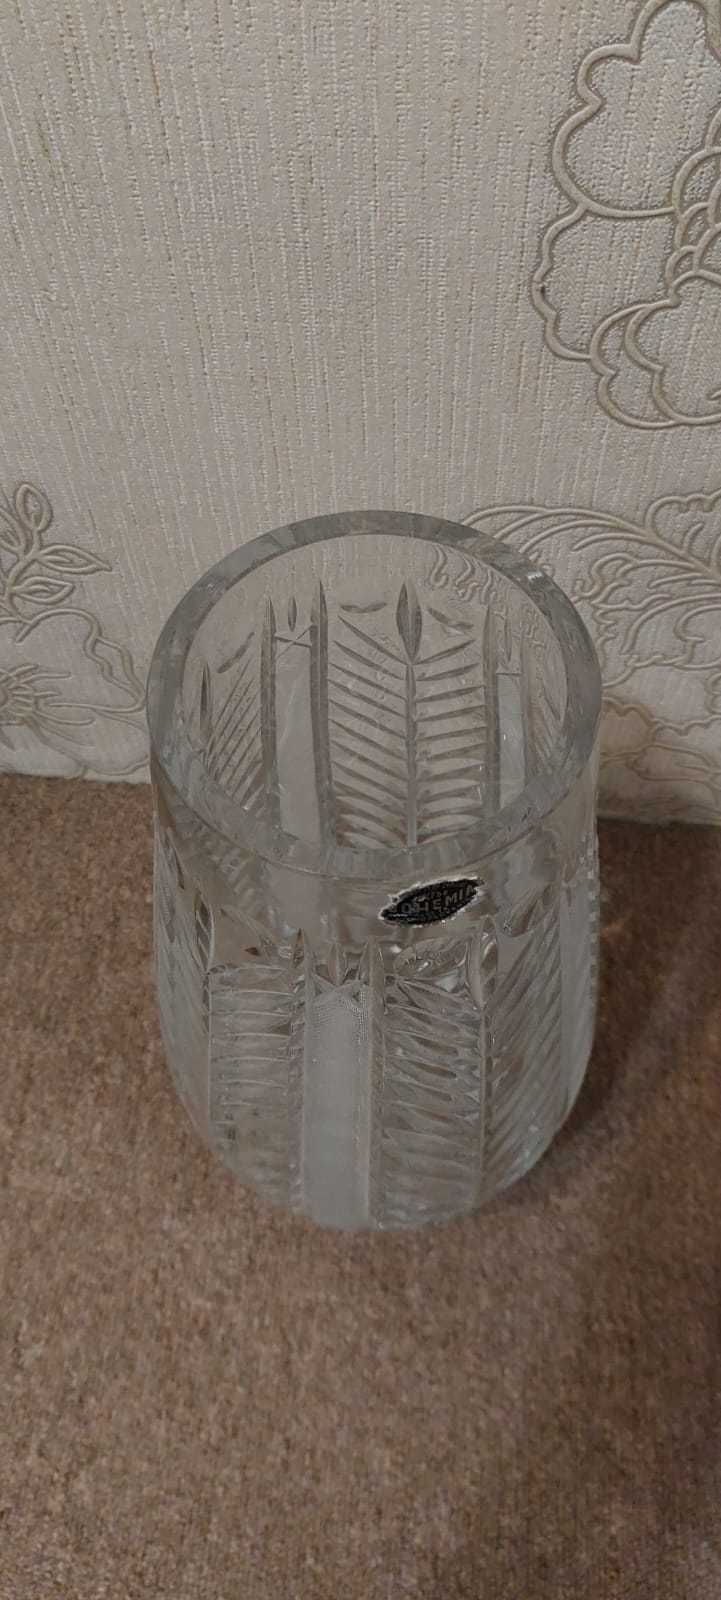 Кришталева ваза \ Хрустальная ваза. Висота 36 см